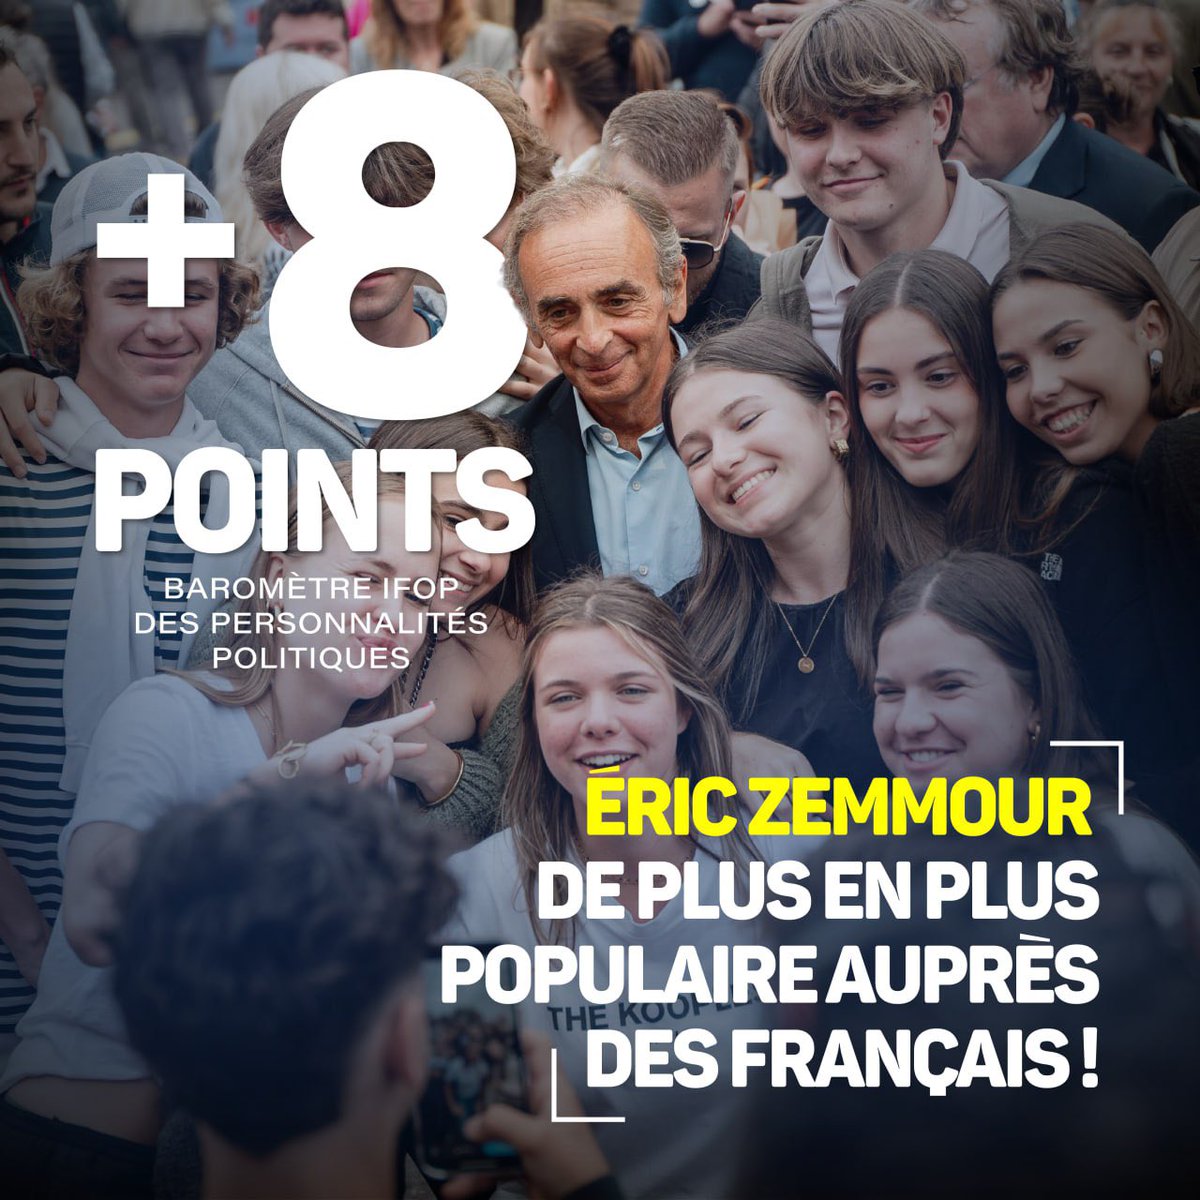 🔥 +8 points de popularité auprès des Français pour Éric Zemmour ! Ses déplacements à travers toute la France pour venir à leur rencontre et ses interventions médiatiques sont un atout majeur pour convaincre les Français. Le 9 juin, #VotezMarion et Reconquête !